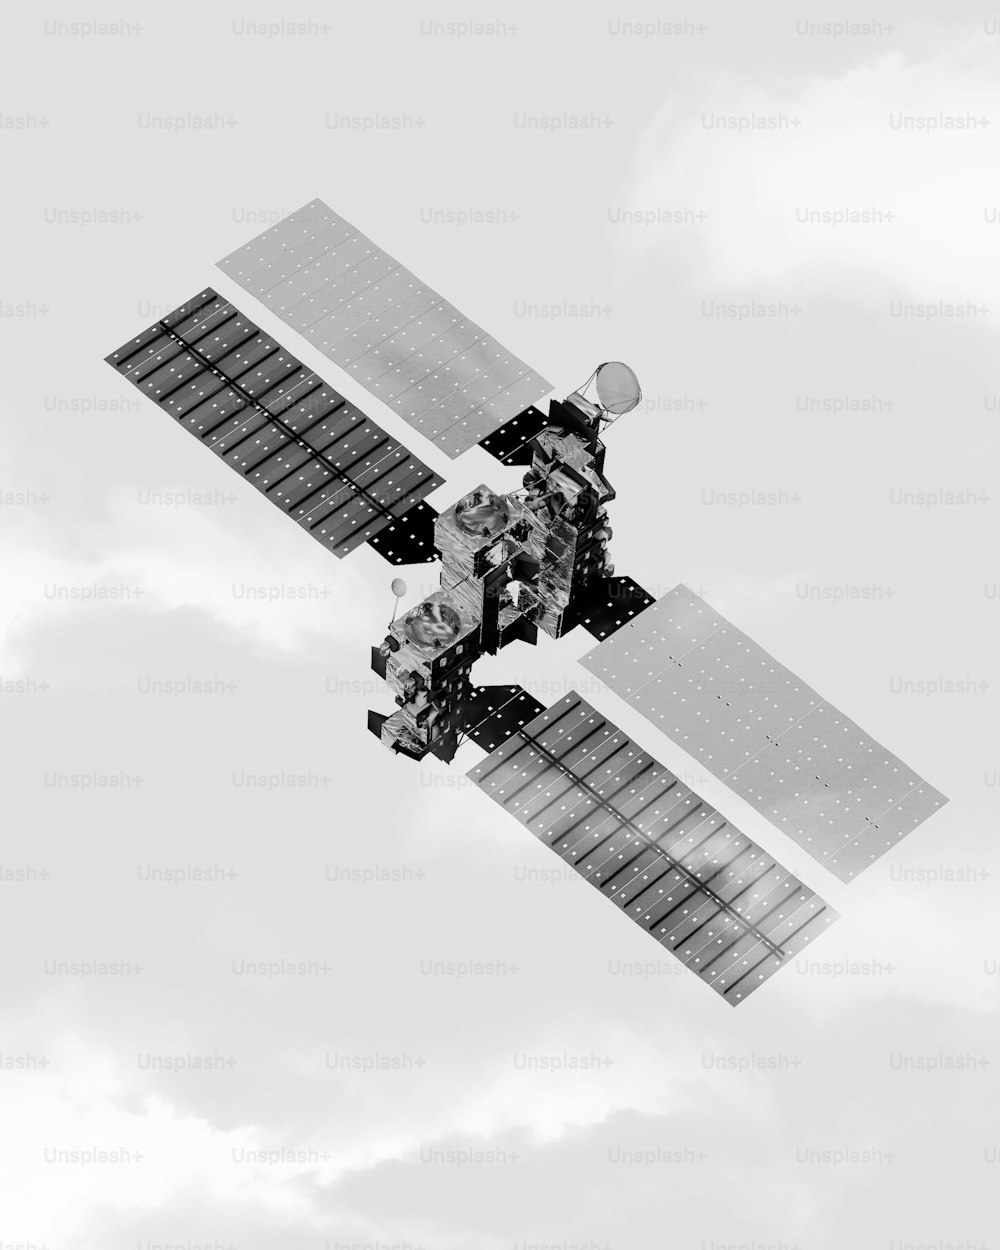 Une photo en noir et blanc d’un satellite dans le ciel